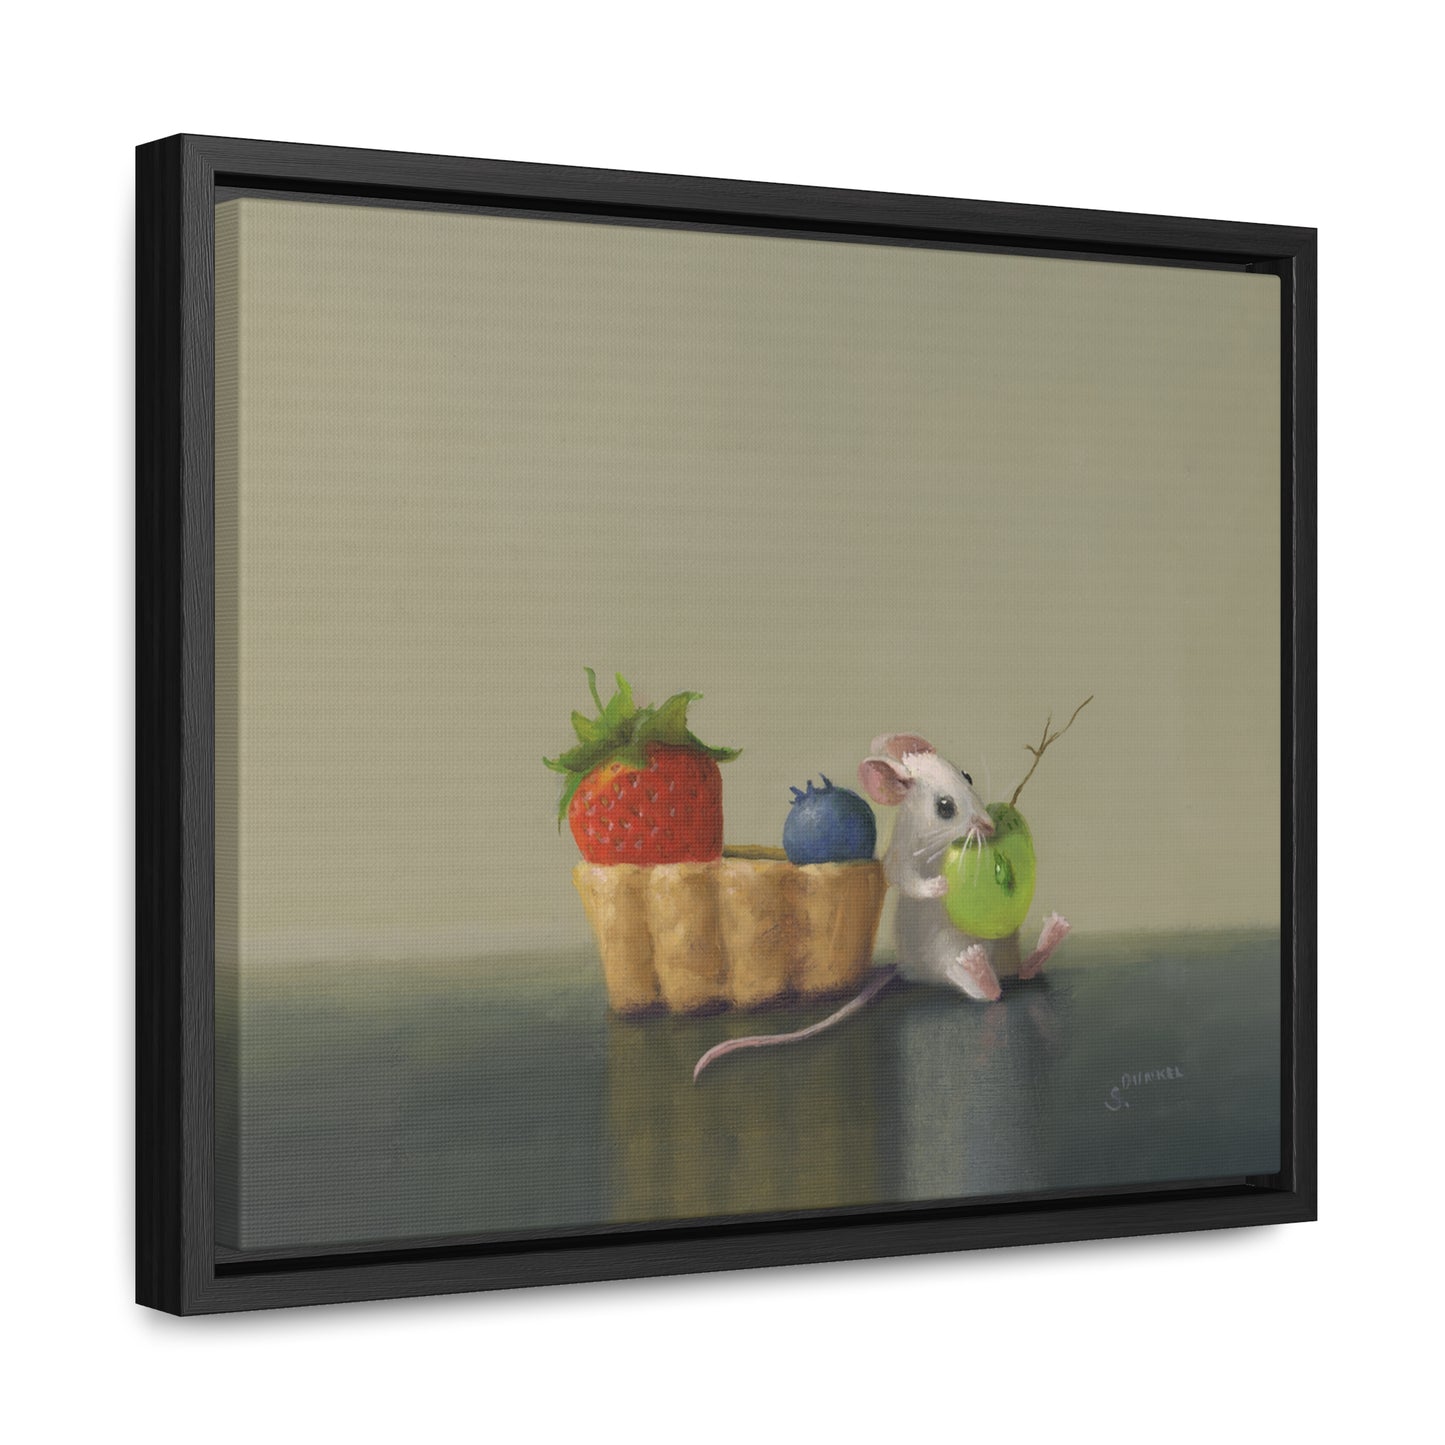 Stuart Dunkel: "Smart Tart" - Framed Canvas Reproduction